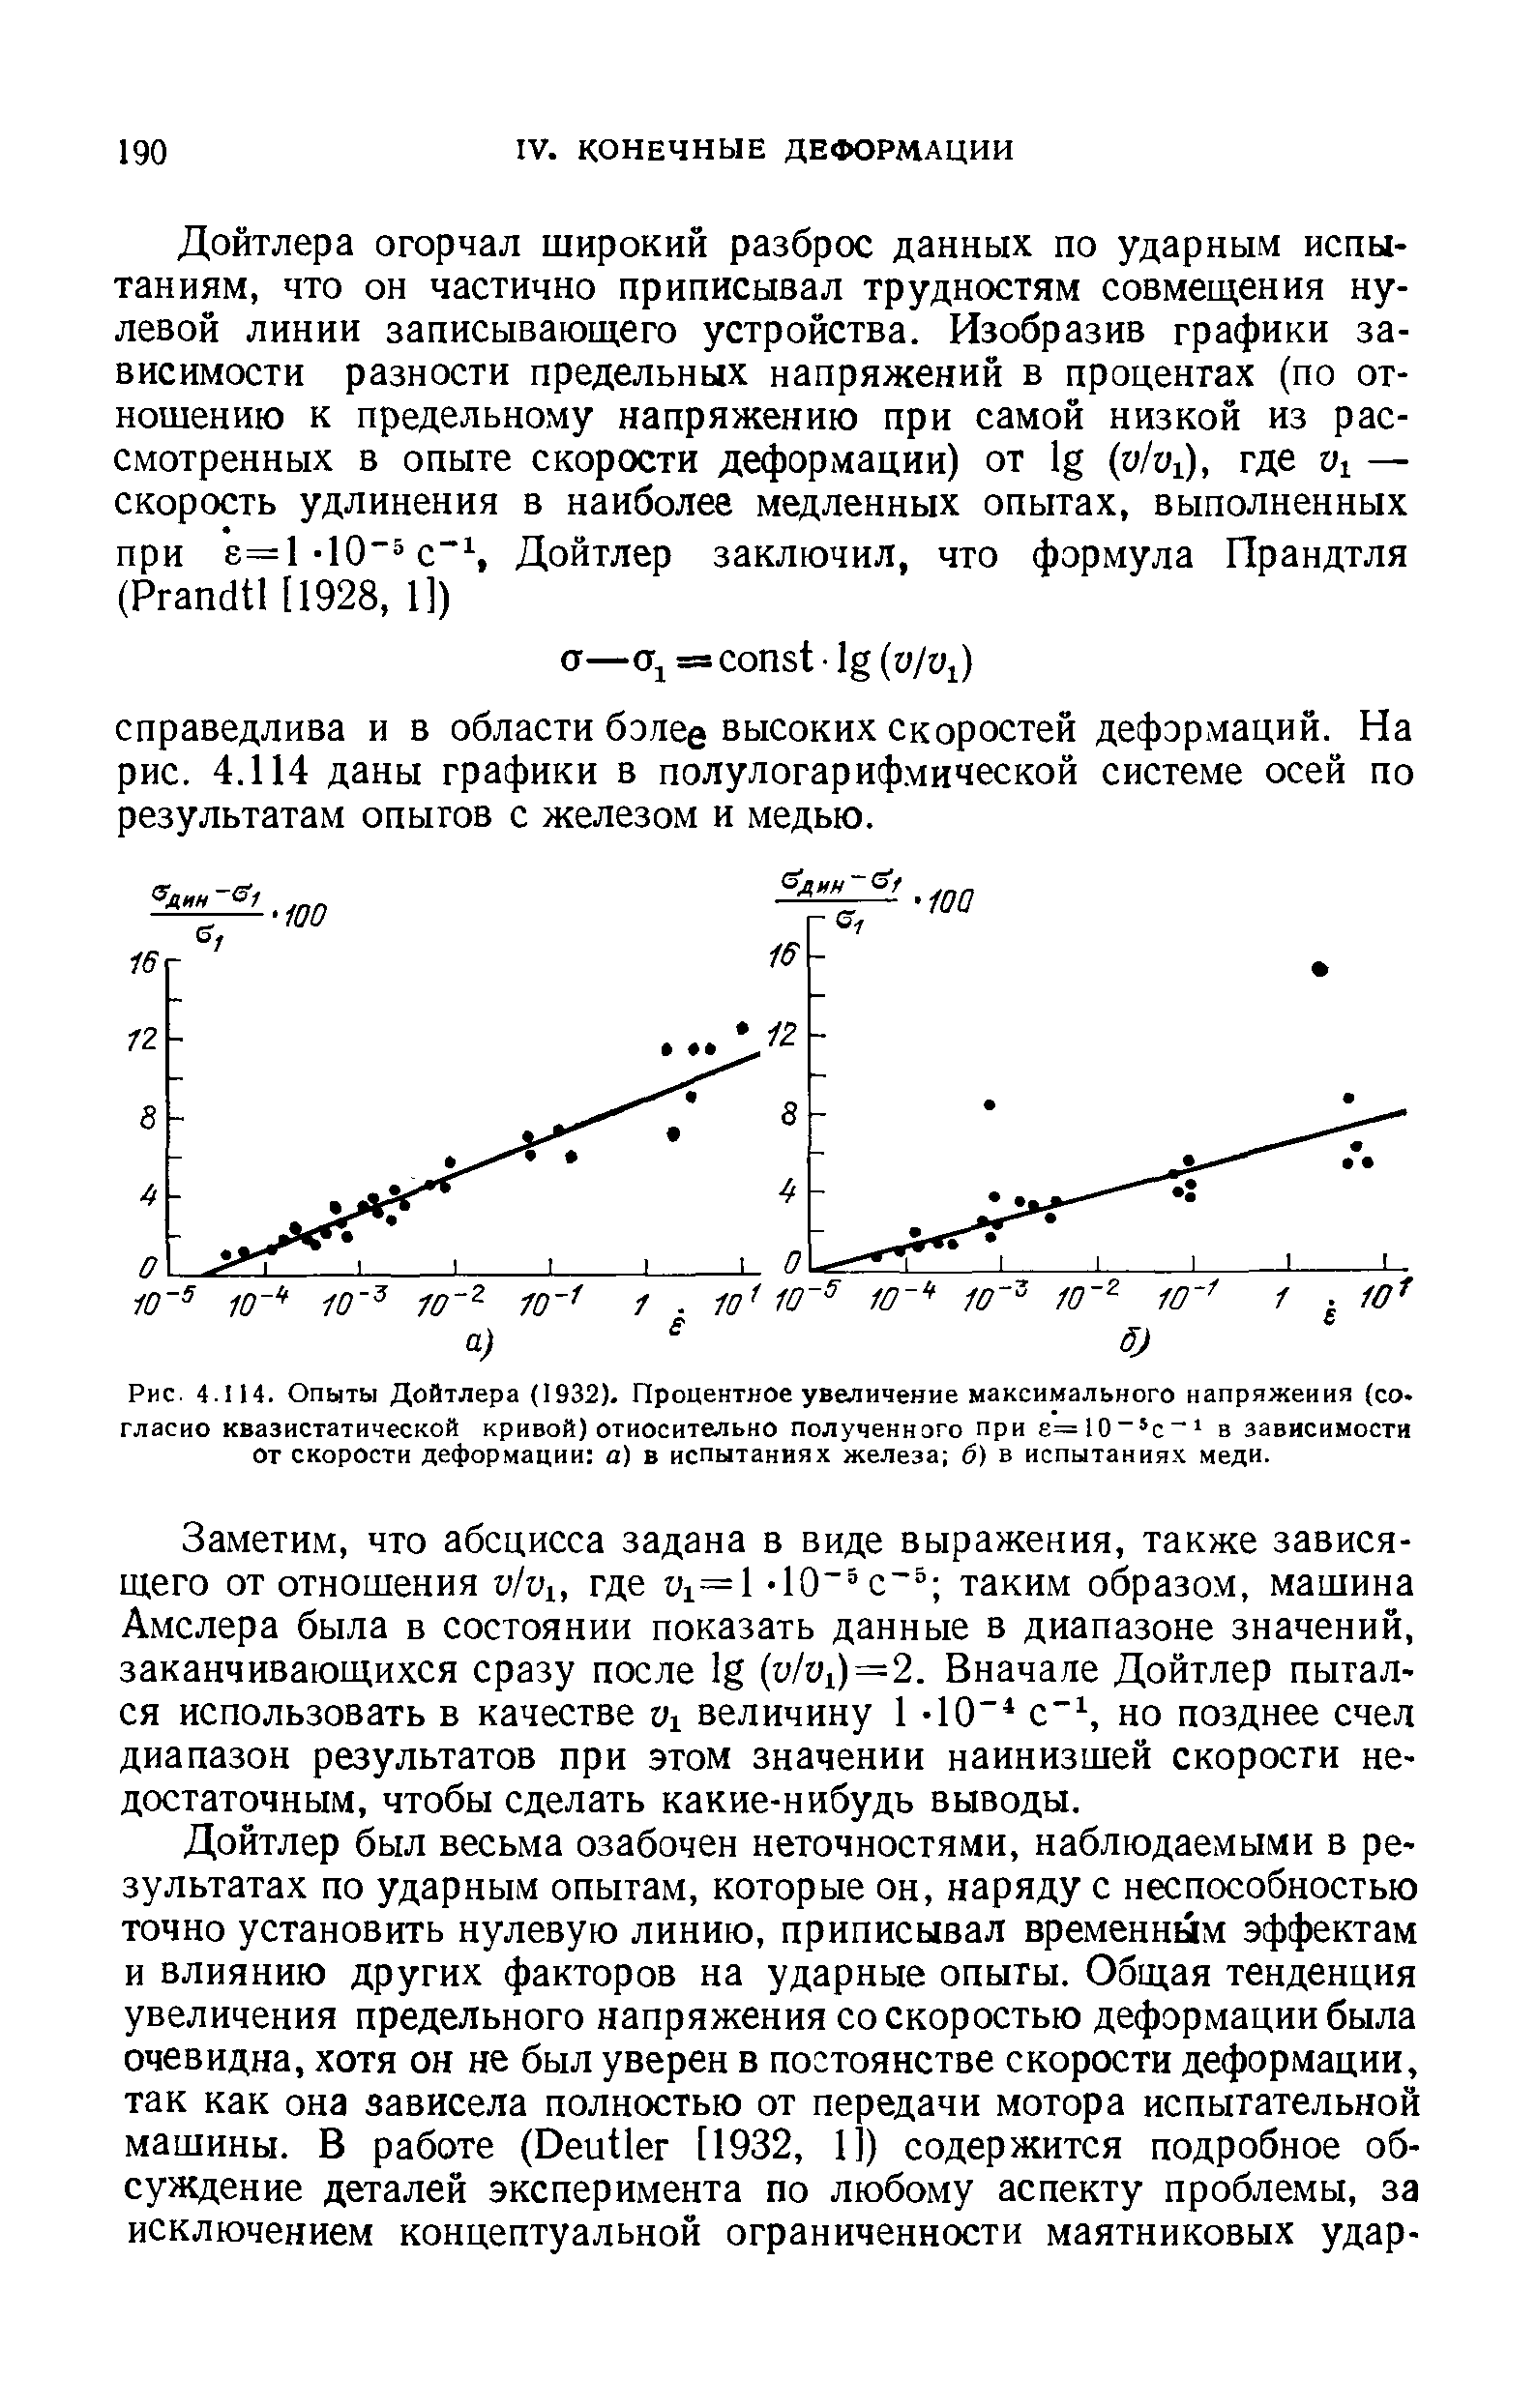 Рис. 4.1 И. Опыты Дойтлера (1932). Процентное увеличение <a href="/info/25418">максимального напряжения</a> (со гласно квазнстатнческой кривой) относительно полученного при е=10 с в зависимости от <a href="/info/420">скорости деформации</a> а) в испытаниях железа б) в испытаниях меди.
